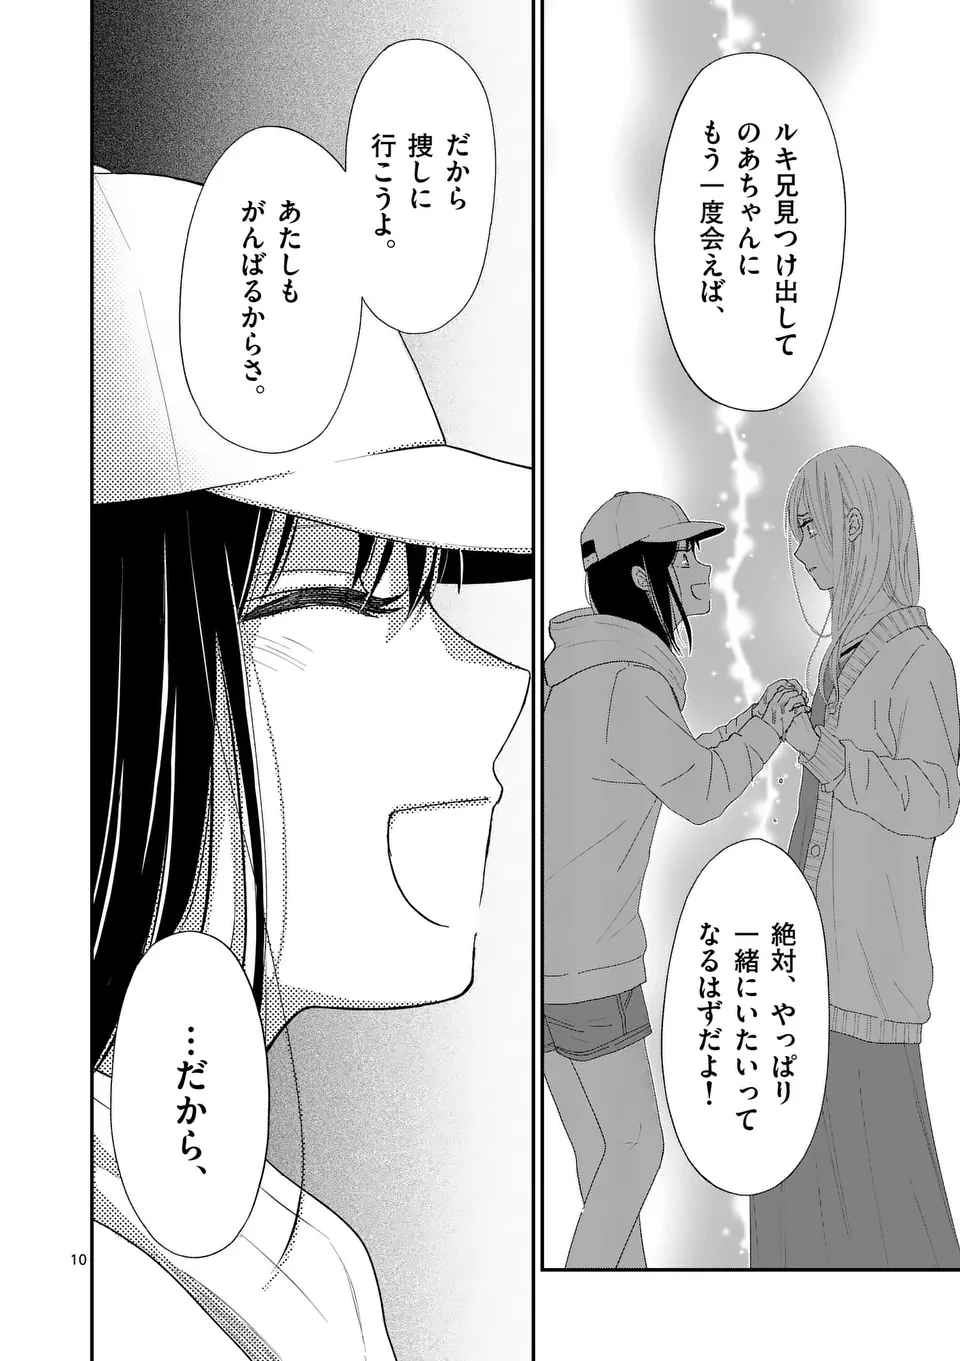 Atashi wo Ijimeta Kanojo no Ko - Chapter 6.1 - Page 10